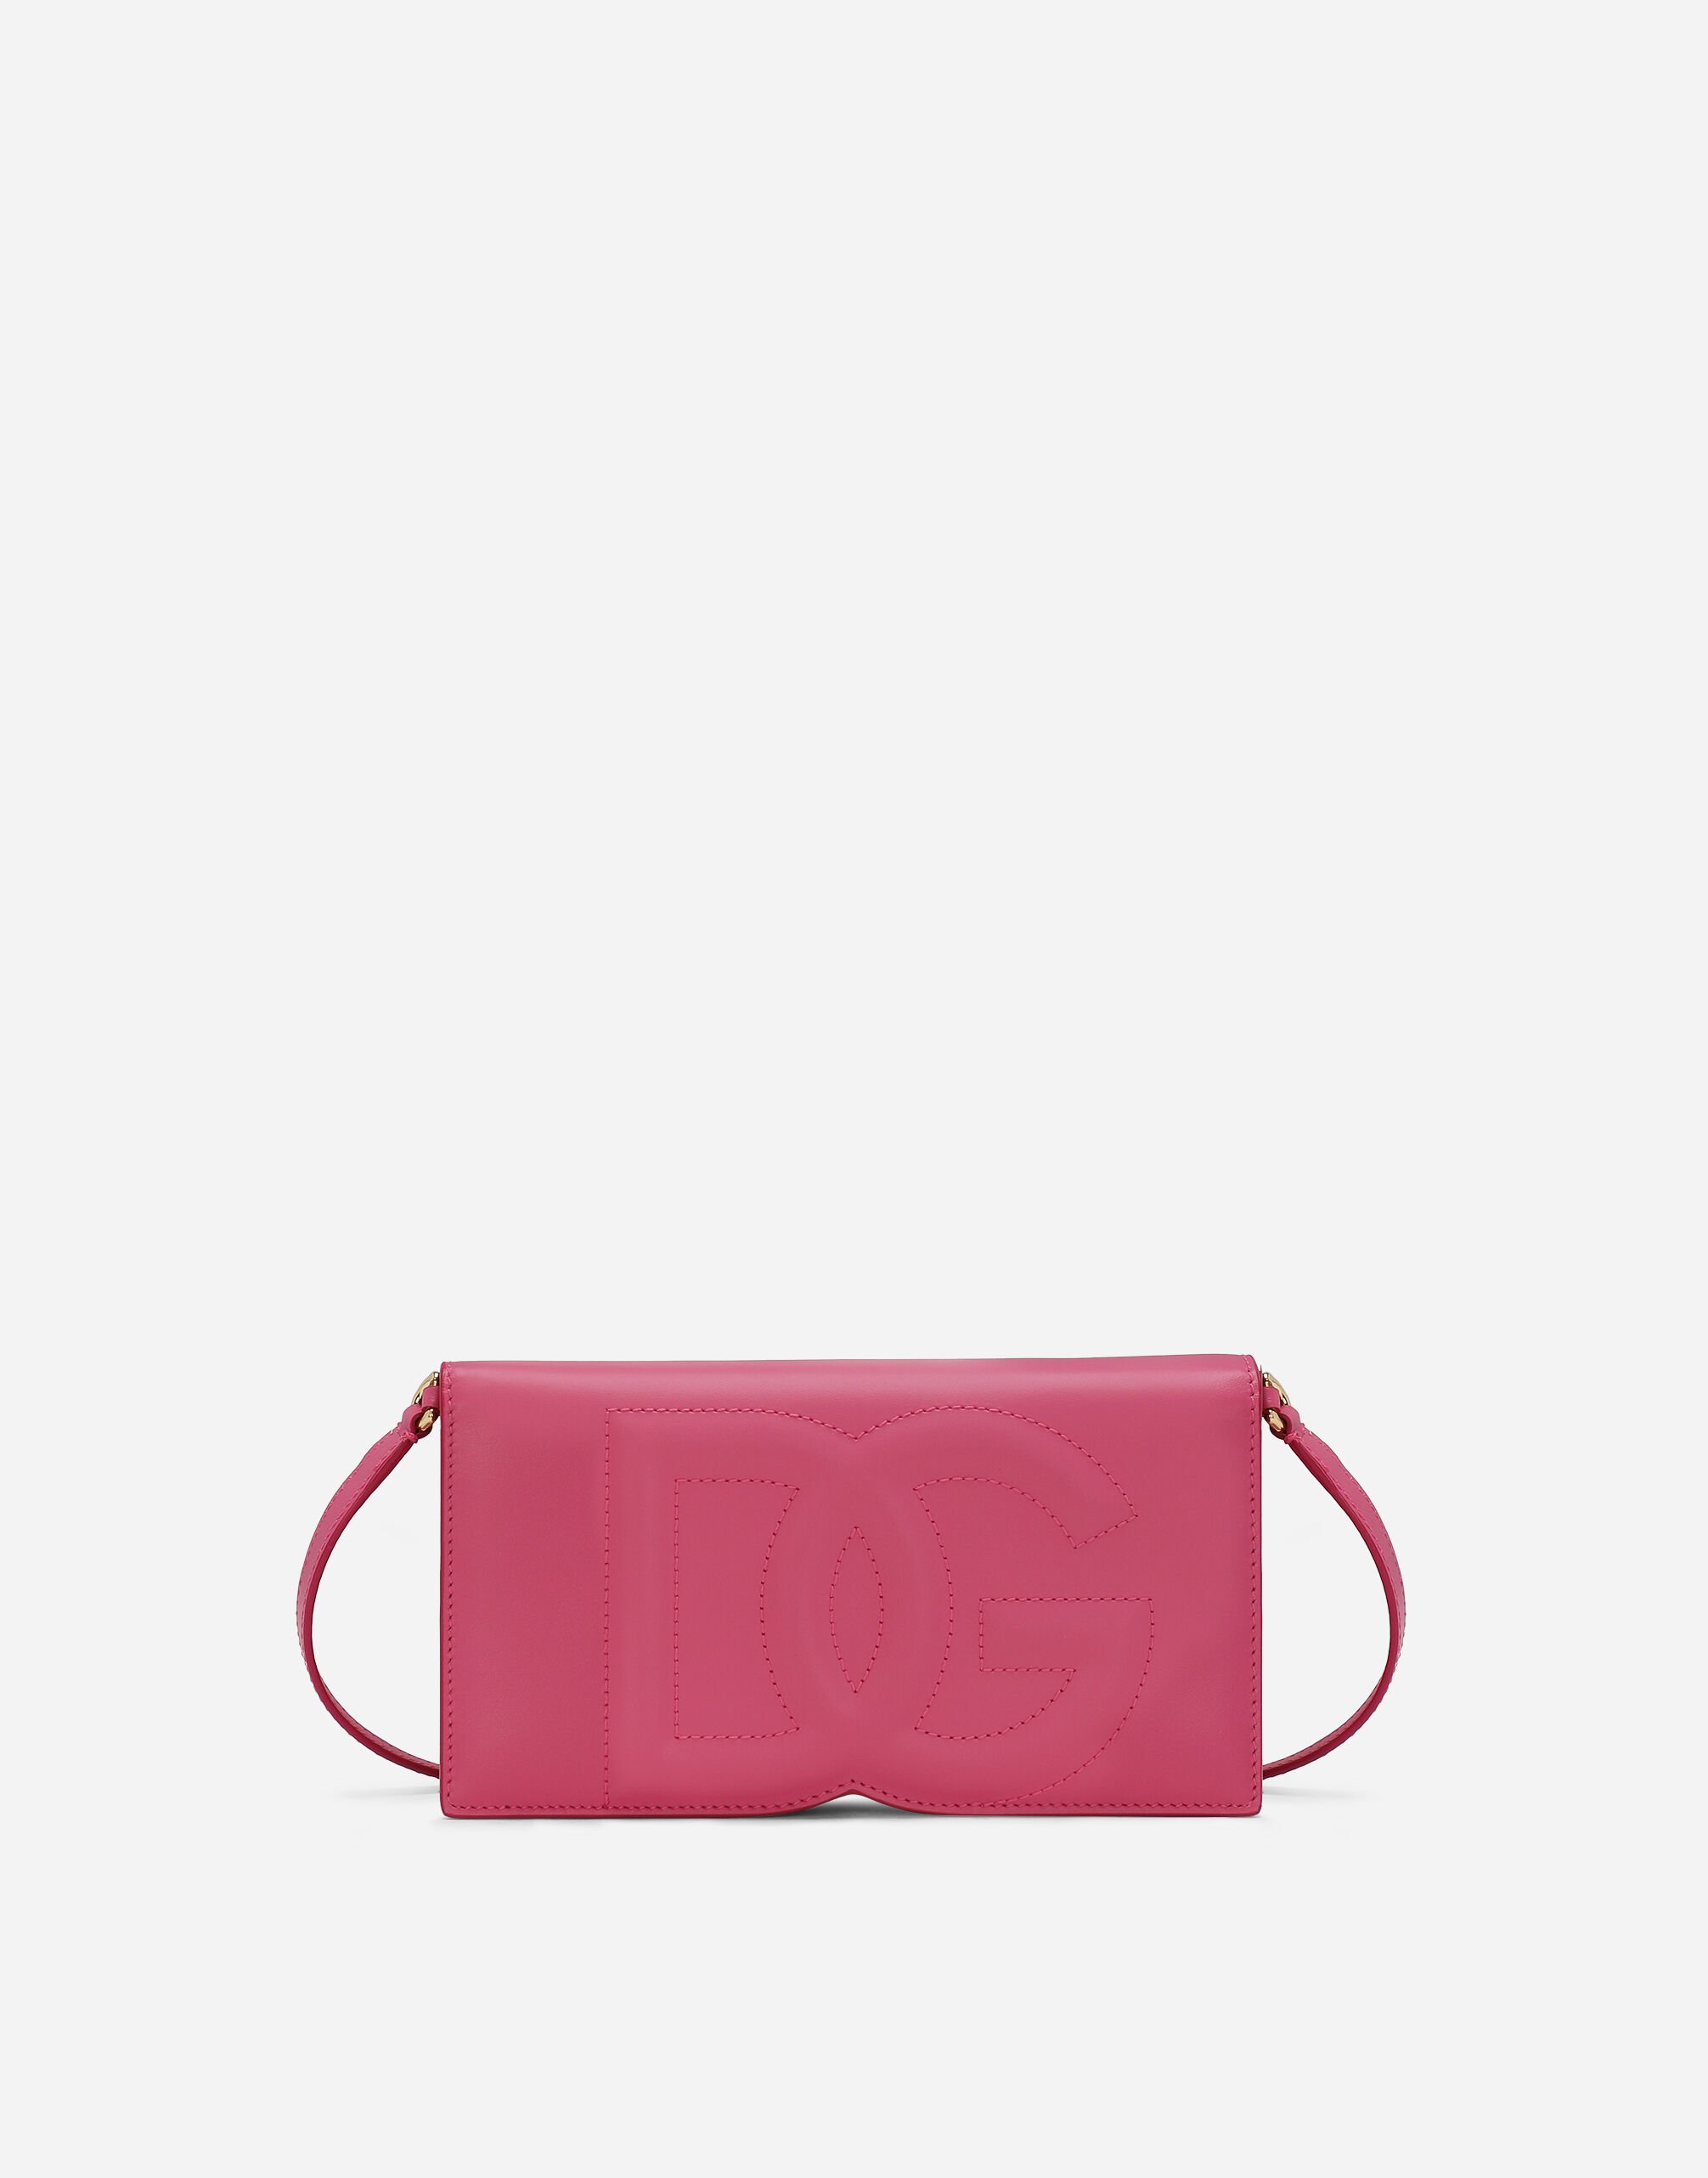 Dolce & Gabbana DG logo phone bag Pink BB7287AS204